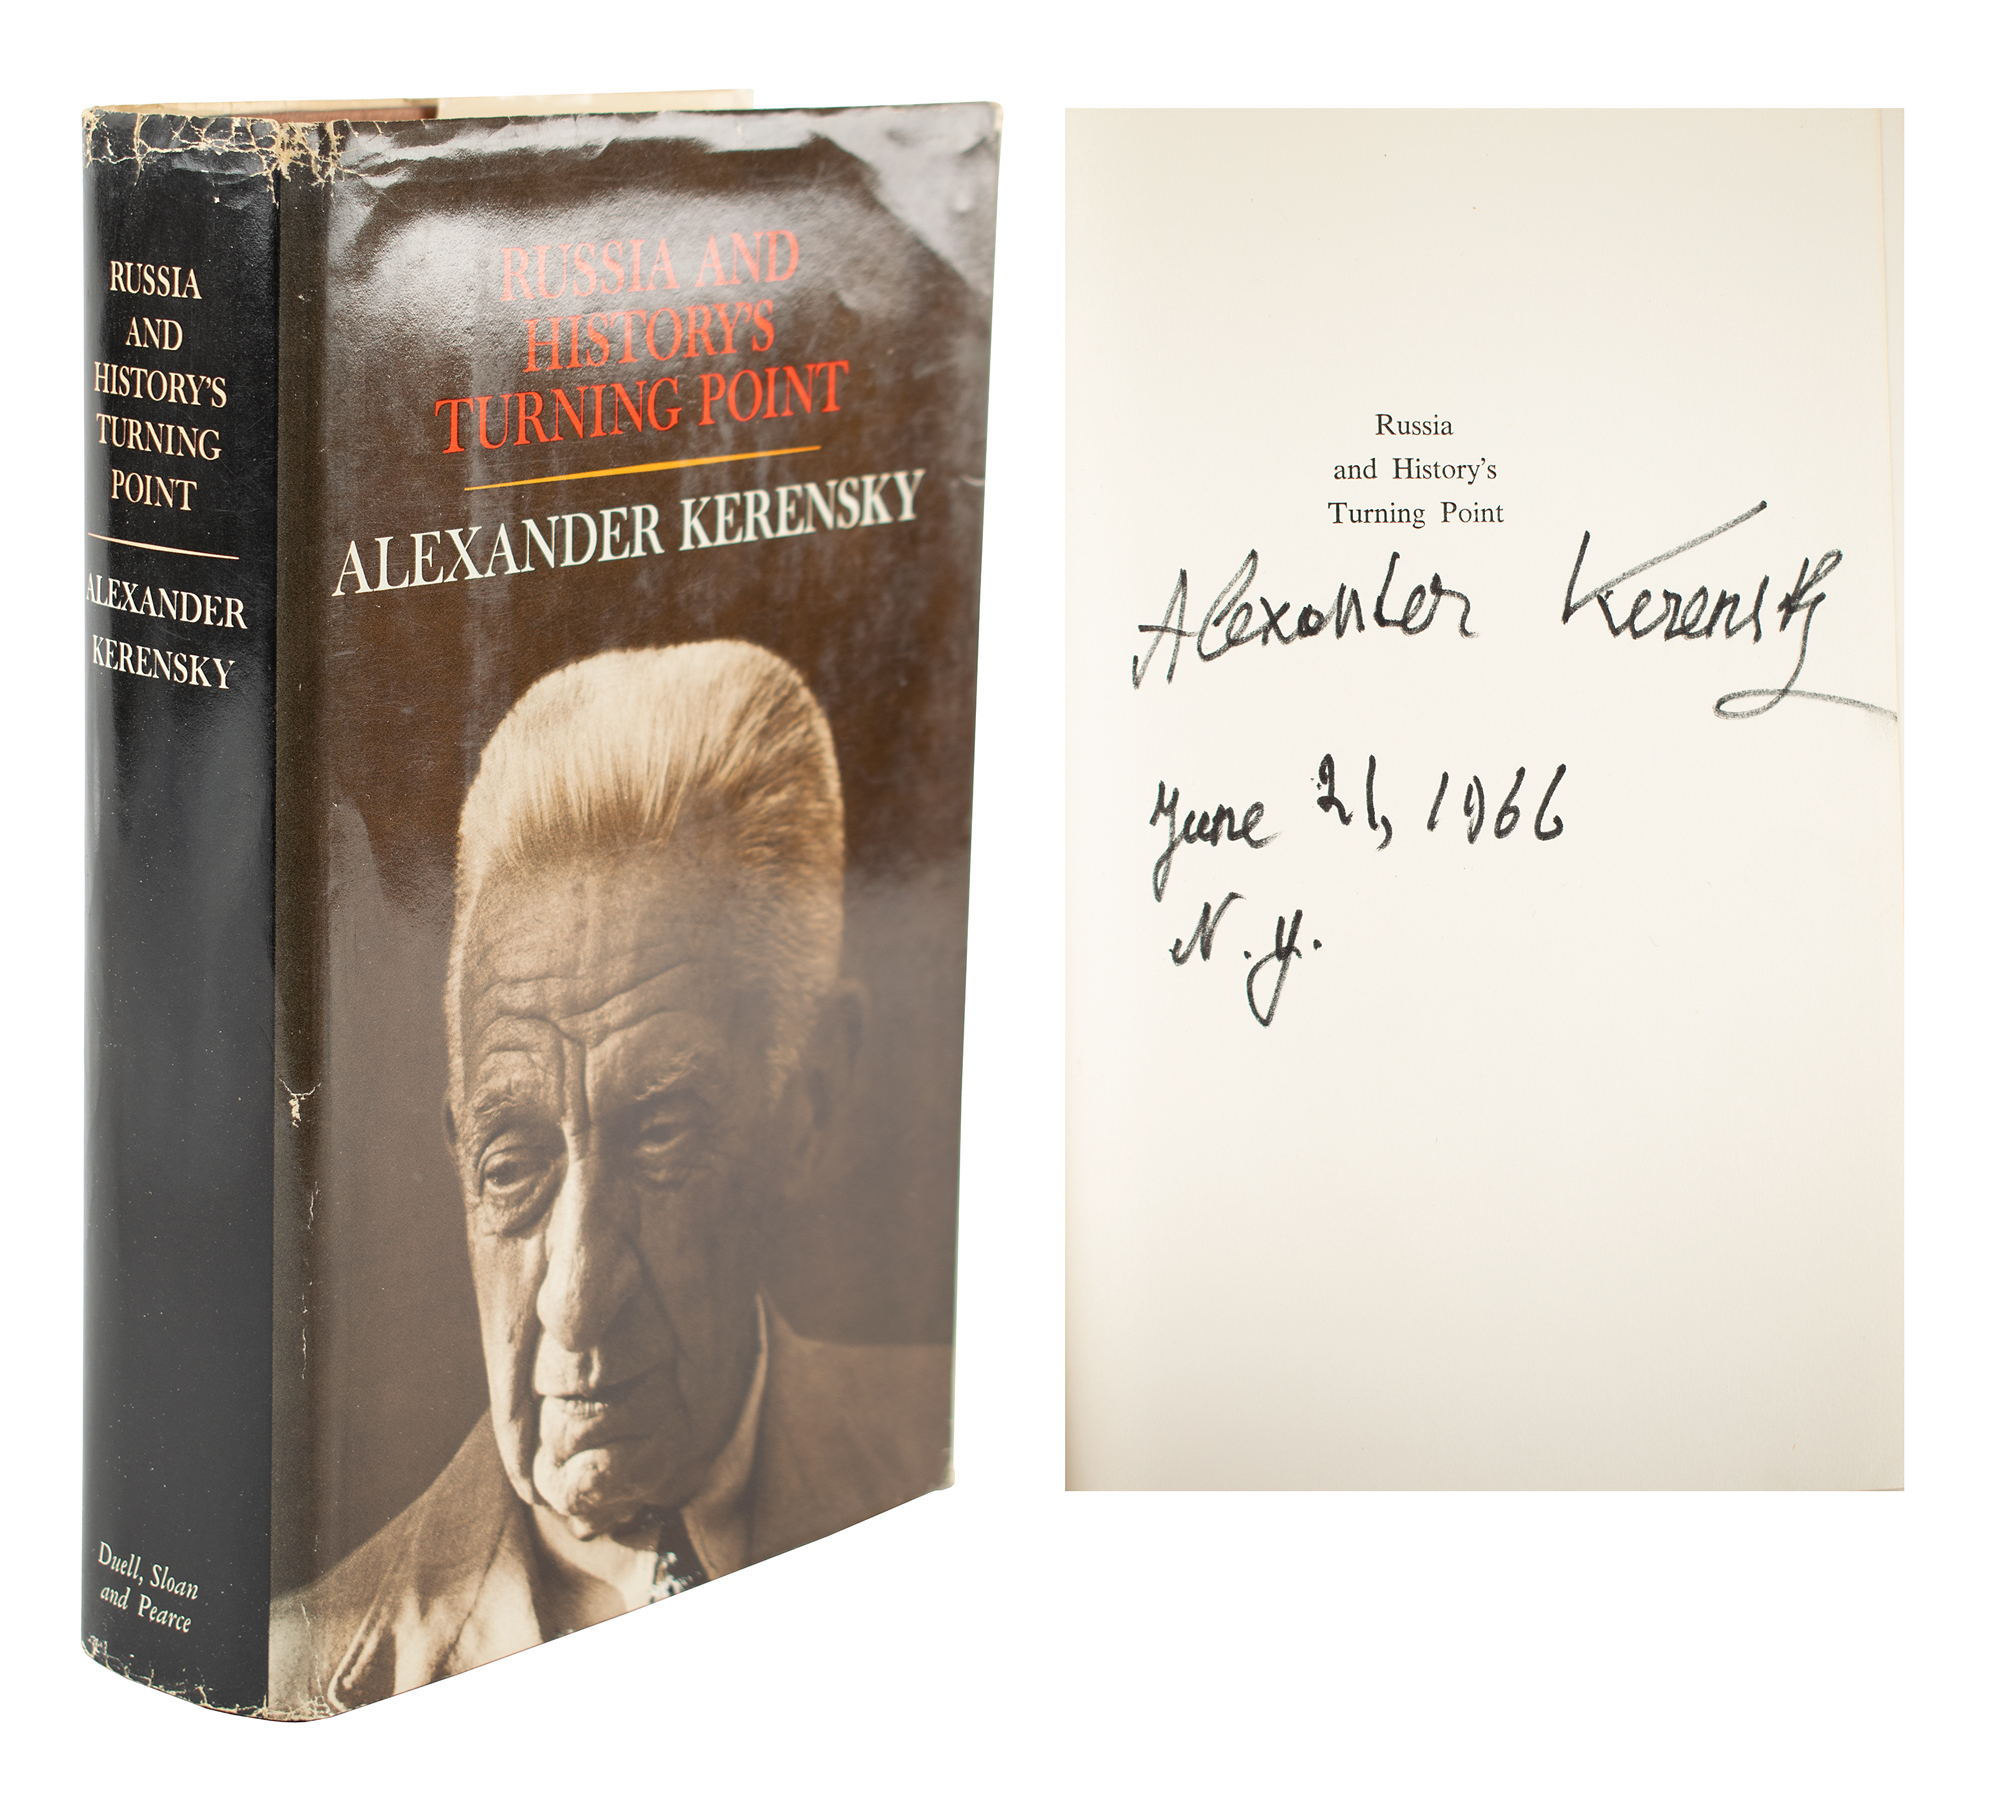 Lot #236 Alexander Kerensky Signed Book